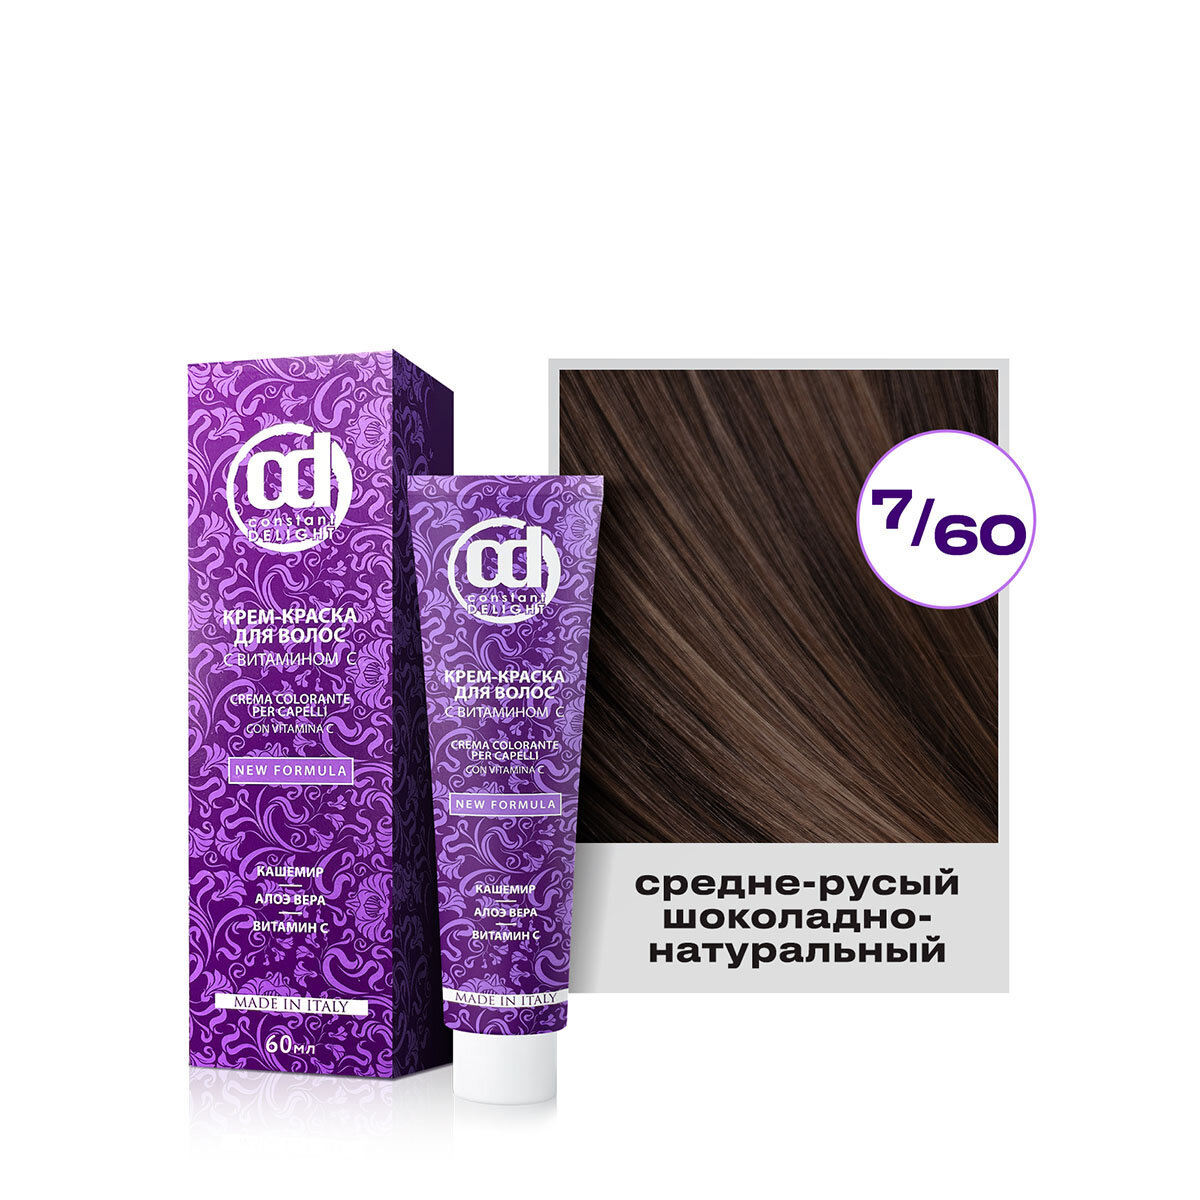 Крем-краска для окрашивания волос CONSTANT DELIGHT 7/60 средне-русый шоколадно-натуральный 60 мл